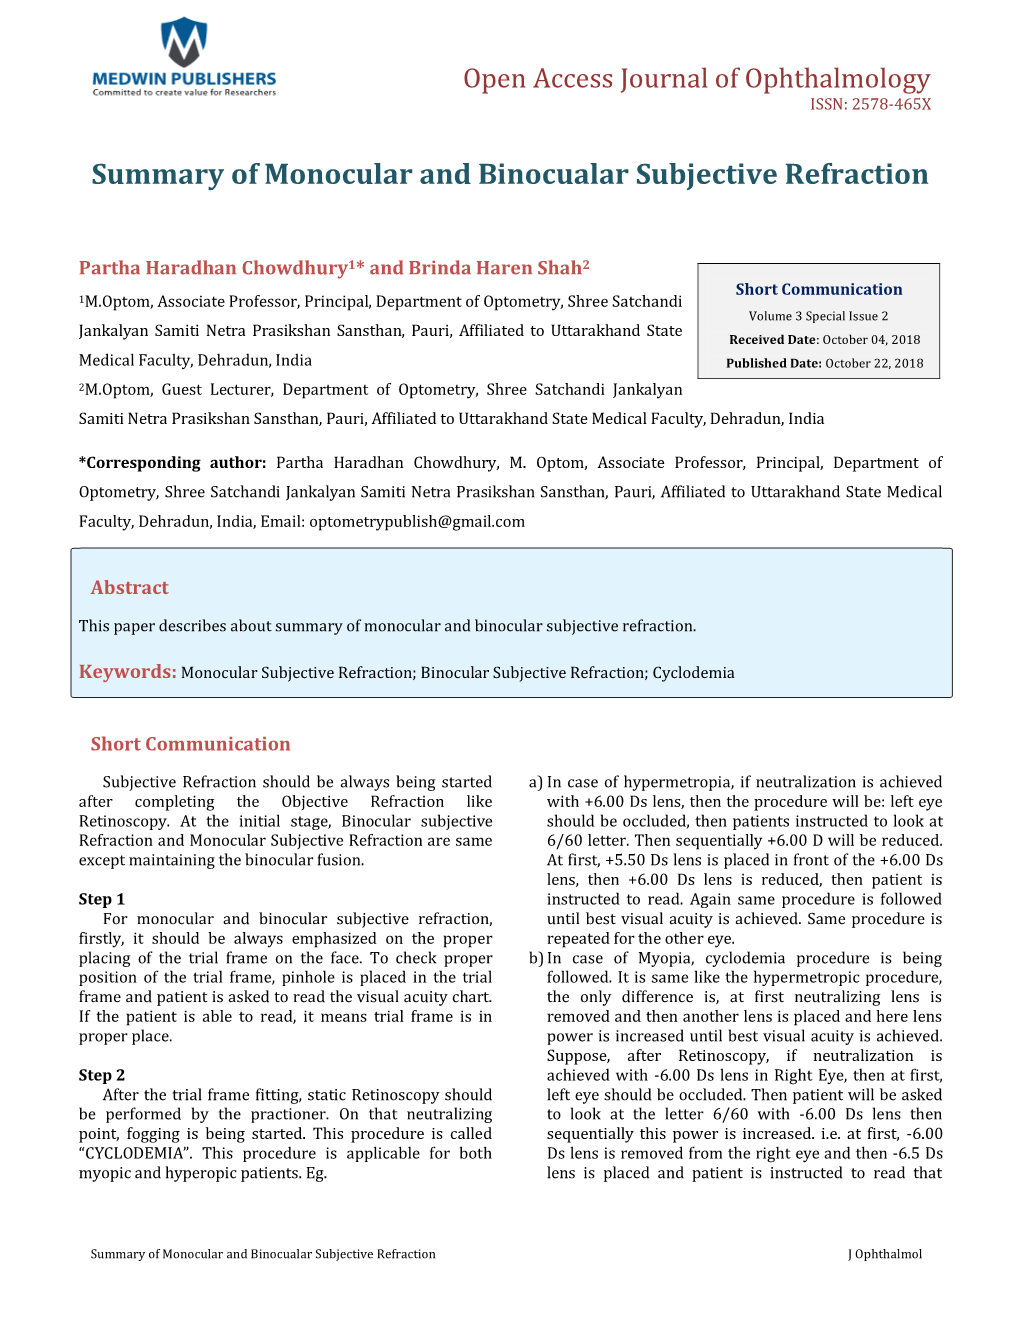 Summary of Monocular and Binocualar Subjective Refraction